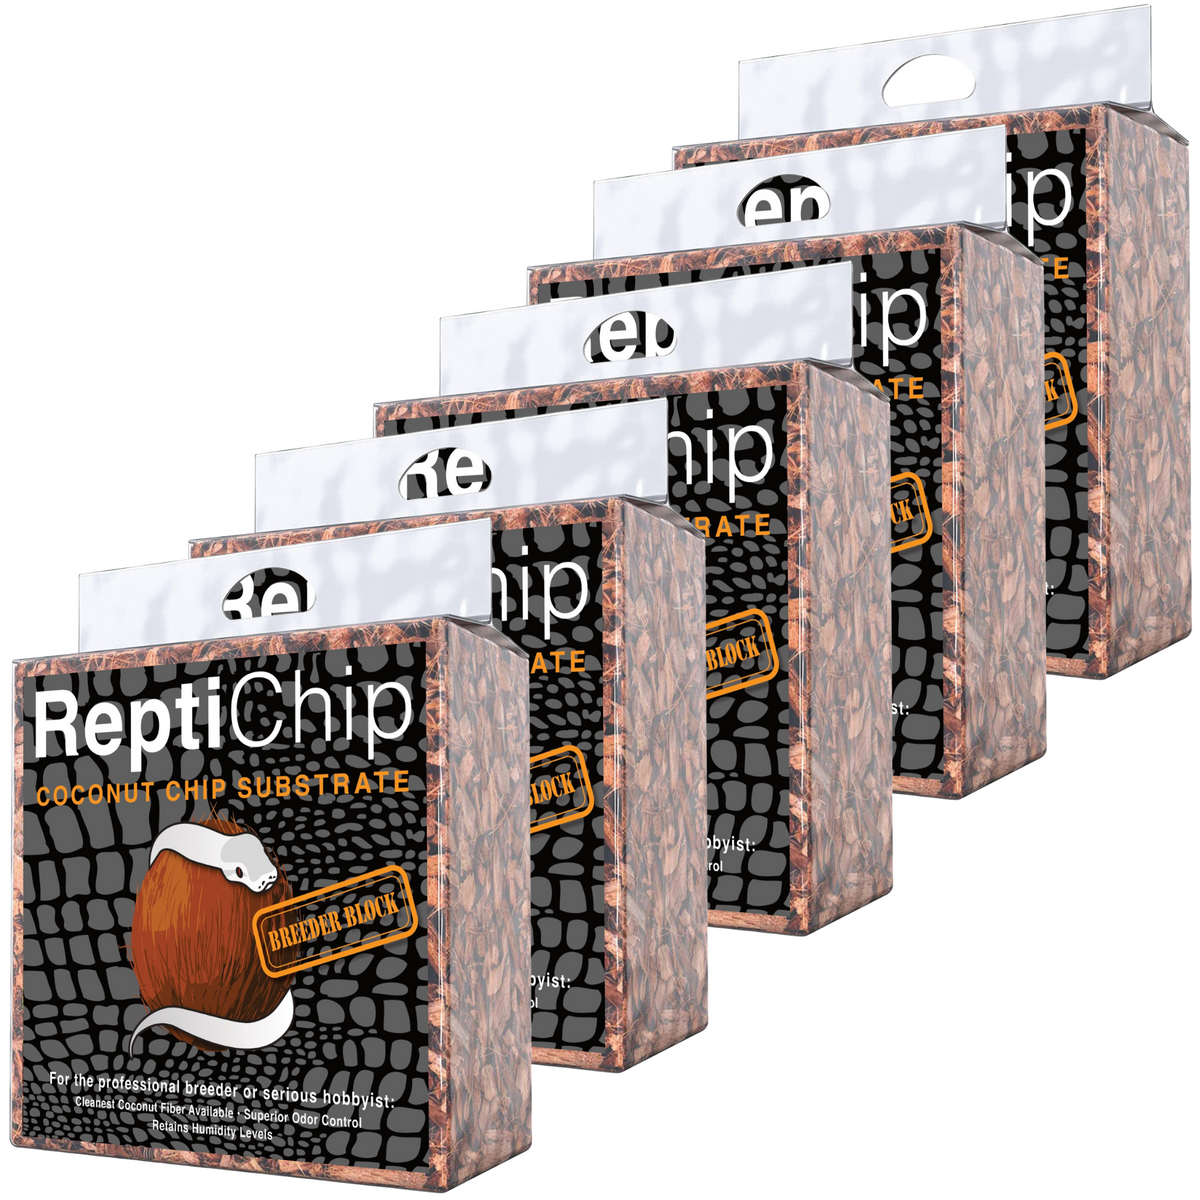 ReptiChip Breeder Blocks and Bundles